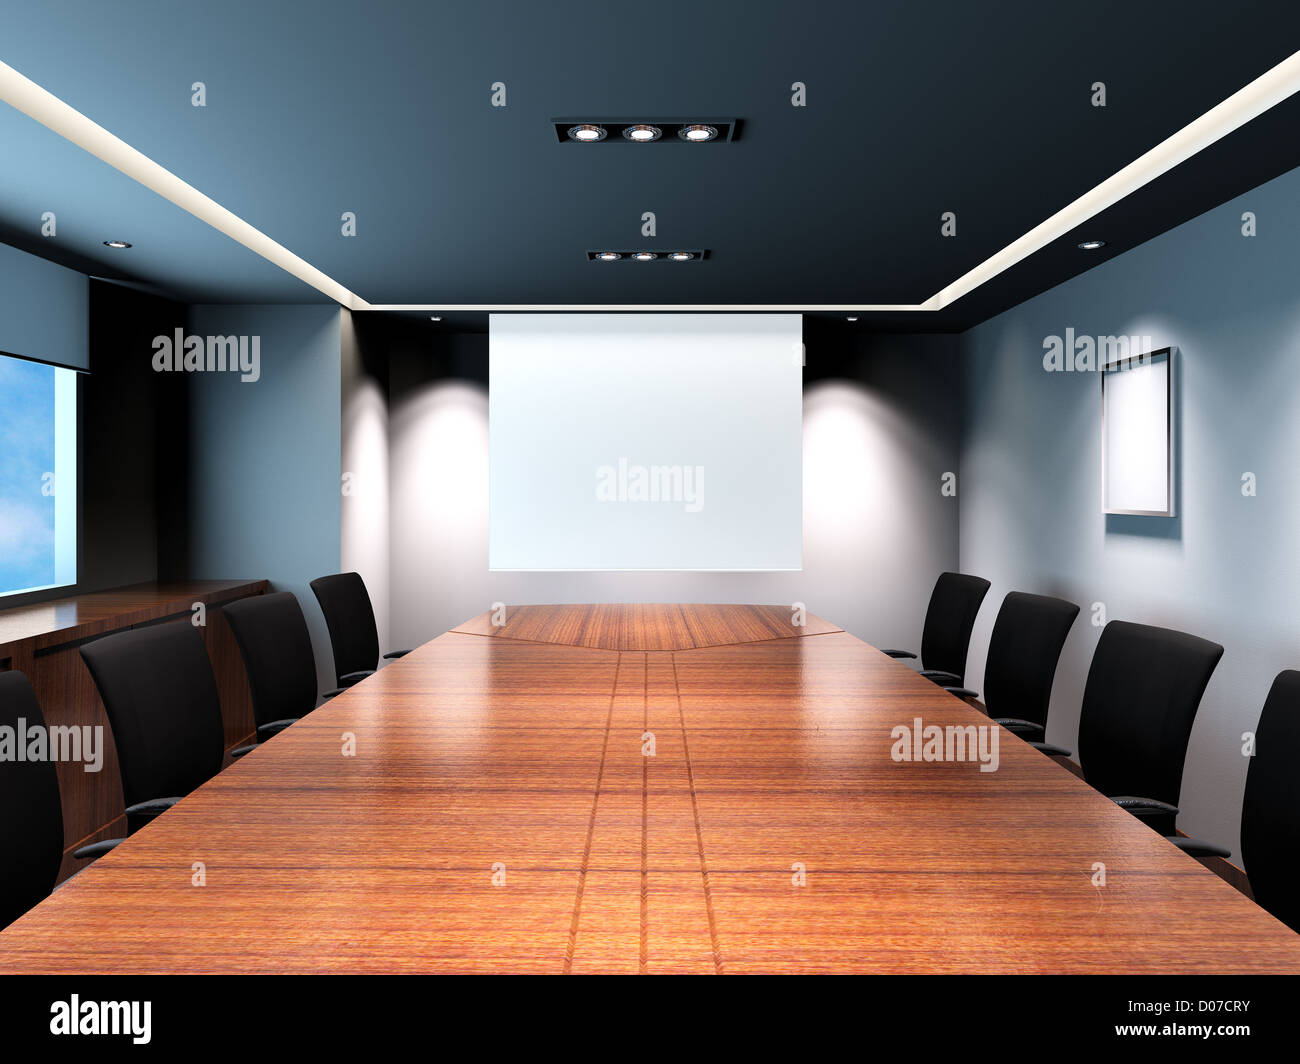 Sala riunioni in ufficio con decor moderno. Uno schermo di proiezione è posto al centro della foto. Foto Stock